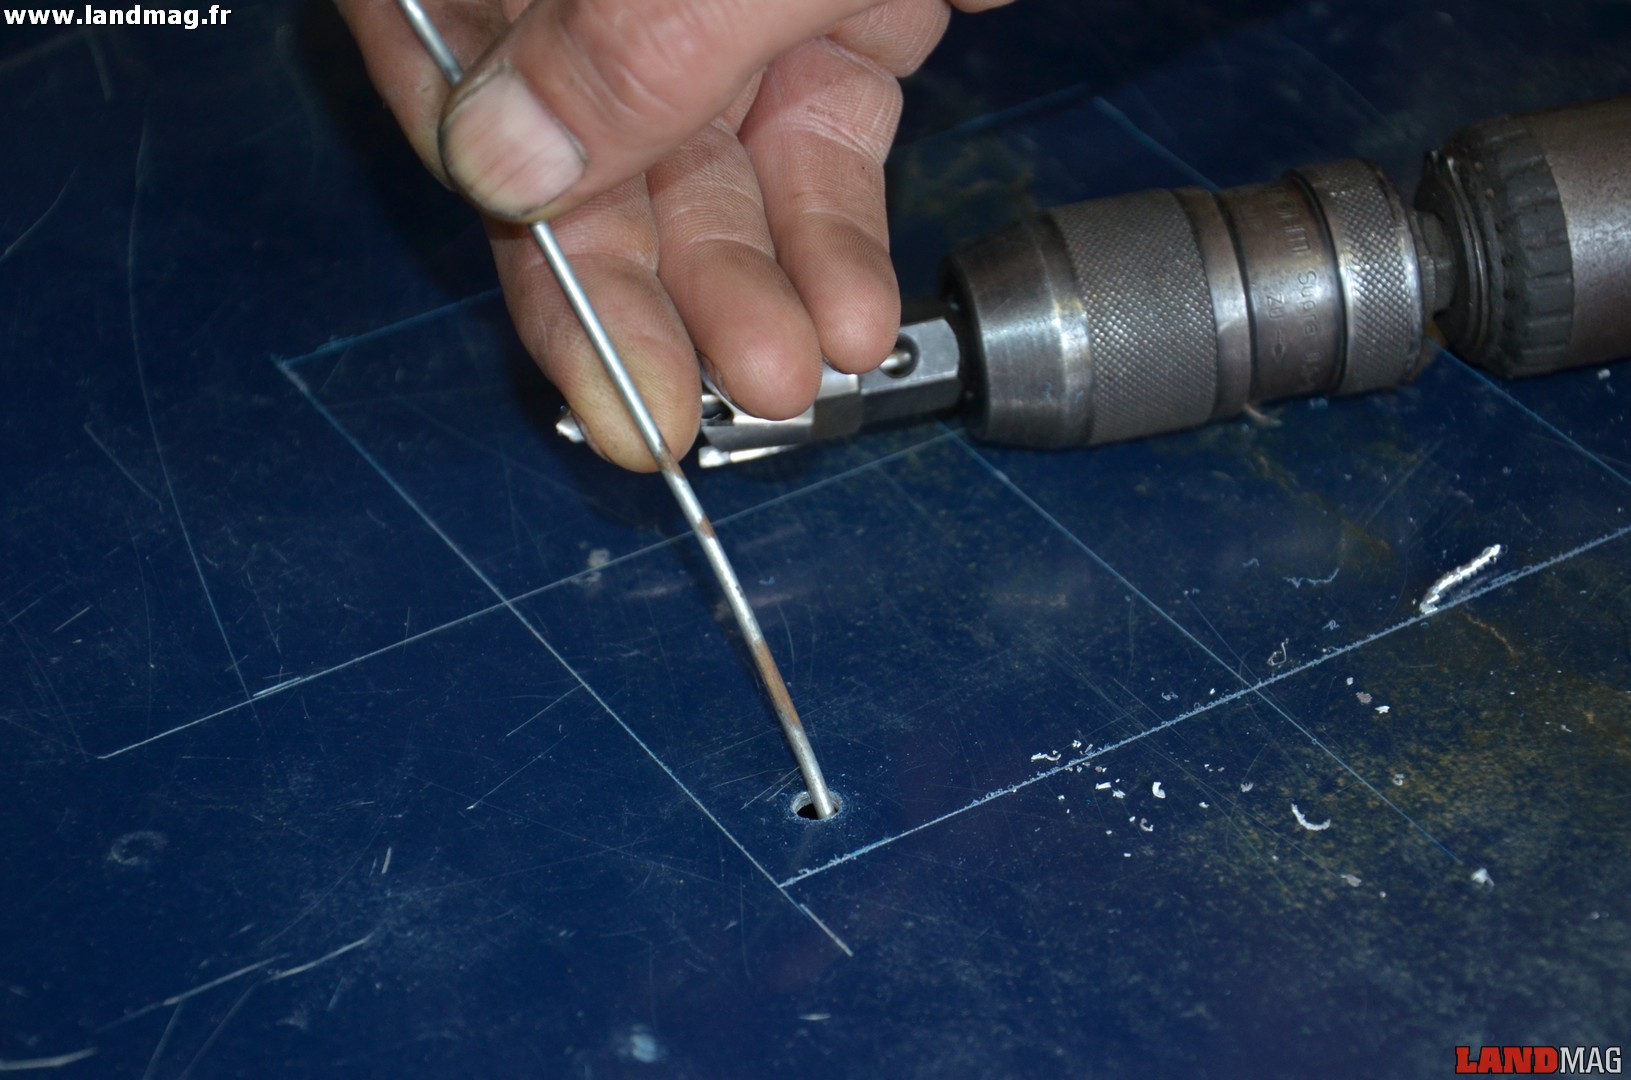 4- Avec une simple tige métallique, vérifier que le faisceau ne se trouve pas au niveau du trou avant de continuer.